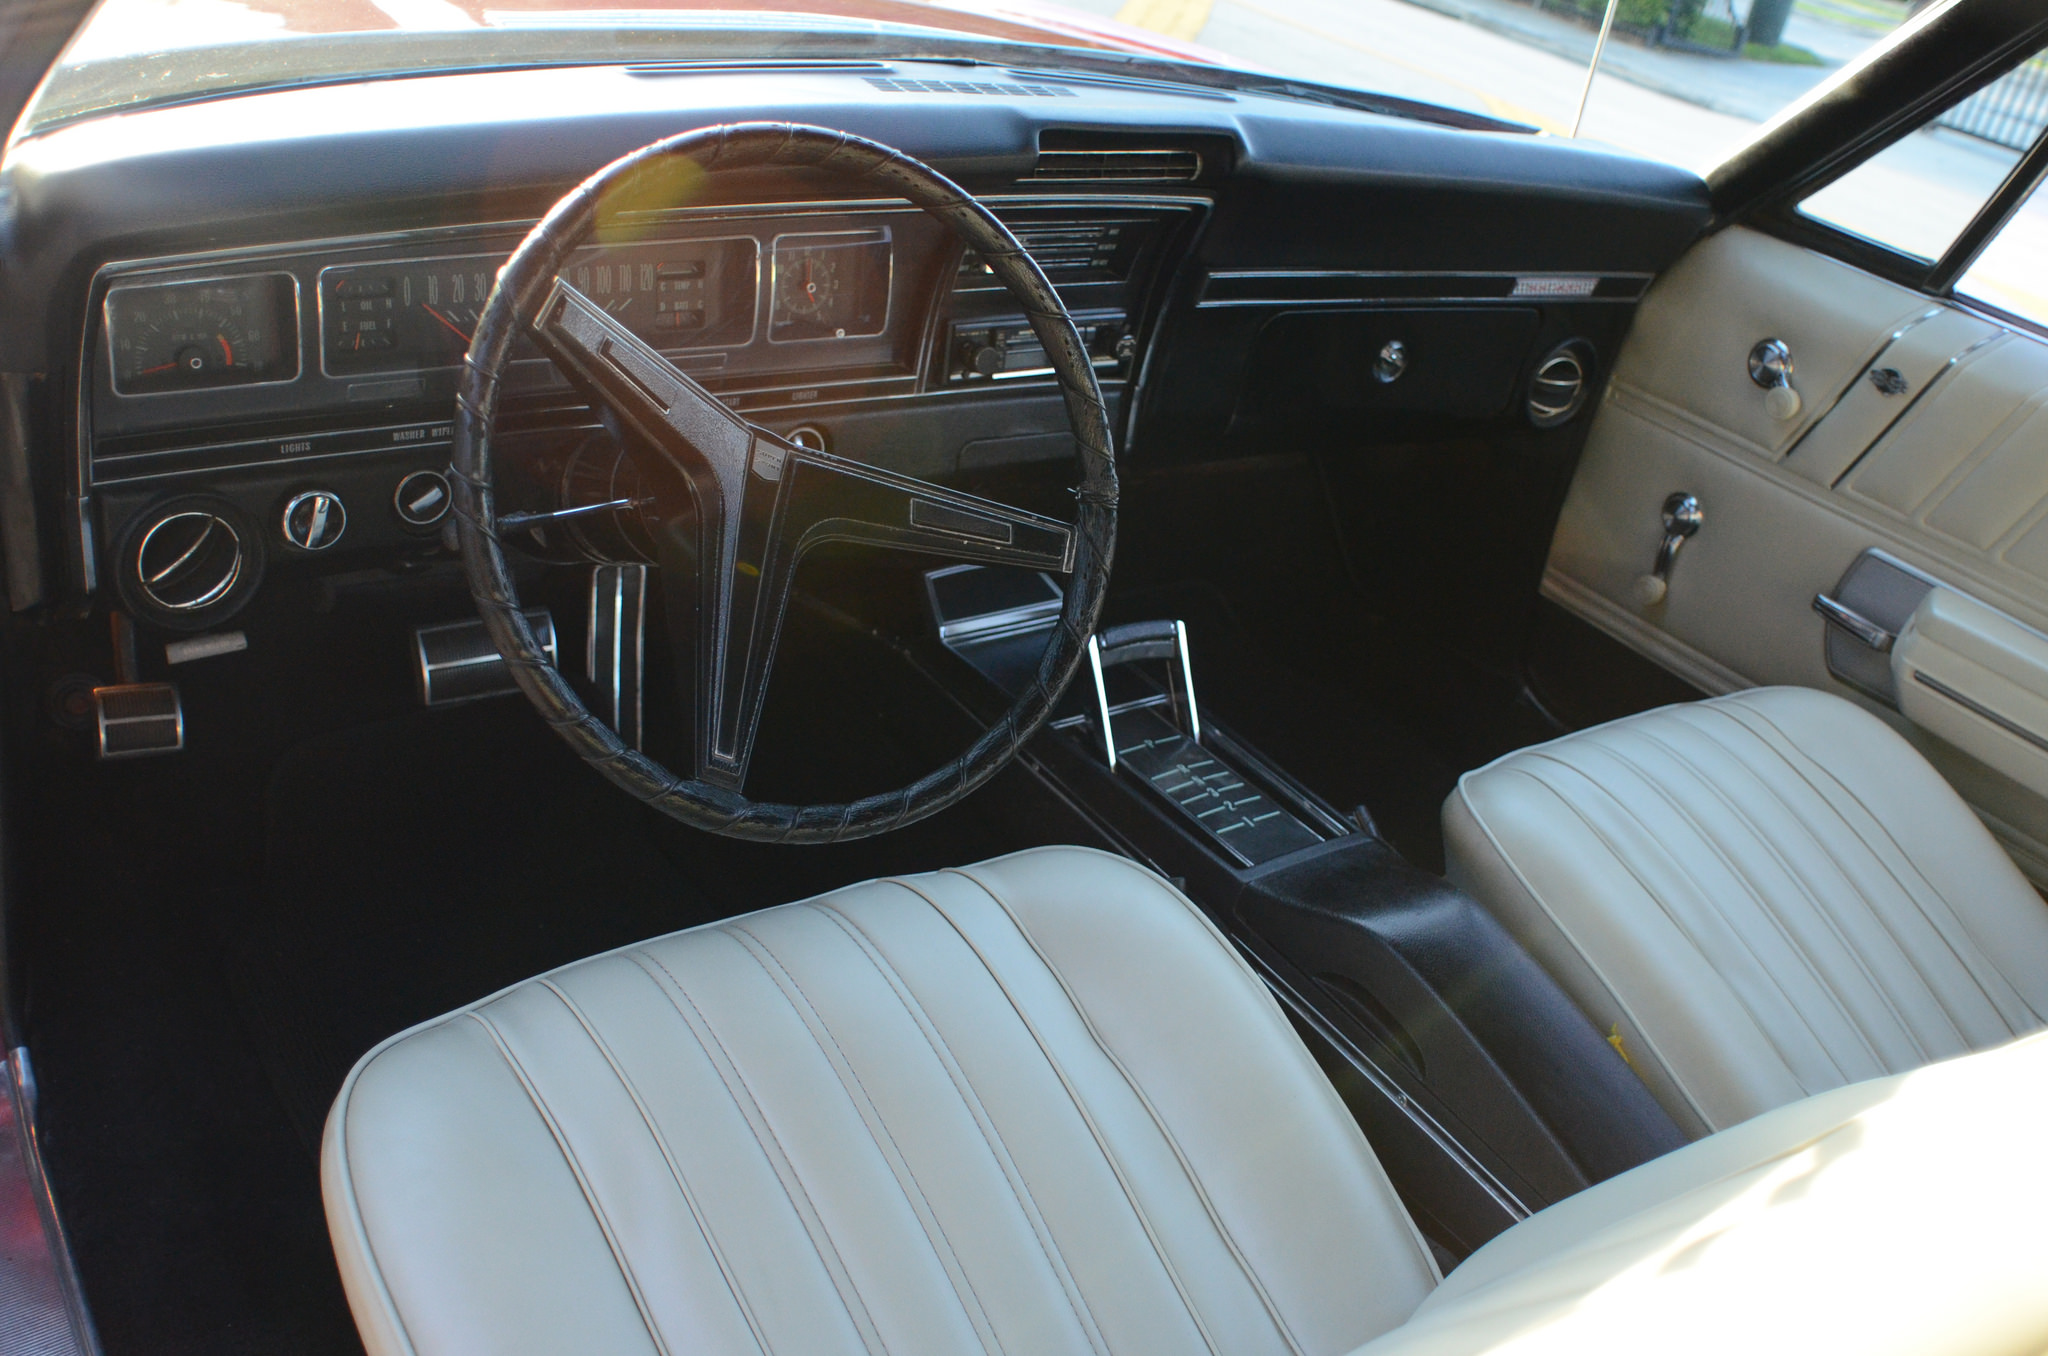 1968 Impala Ss 427 Ingearmotors